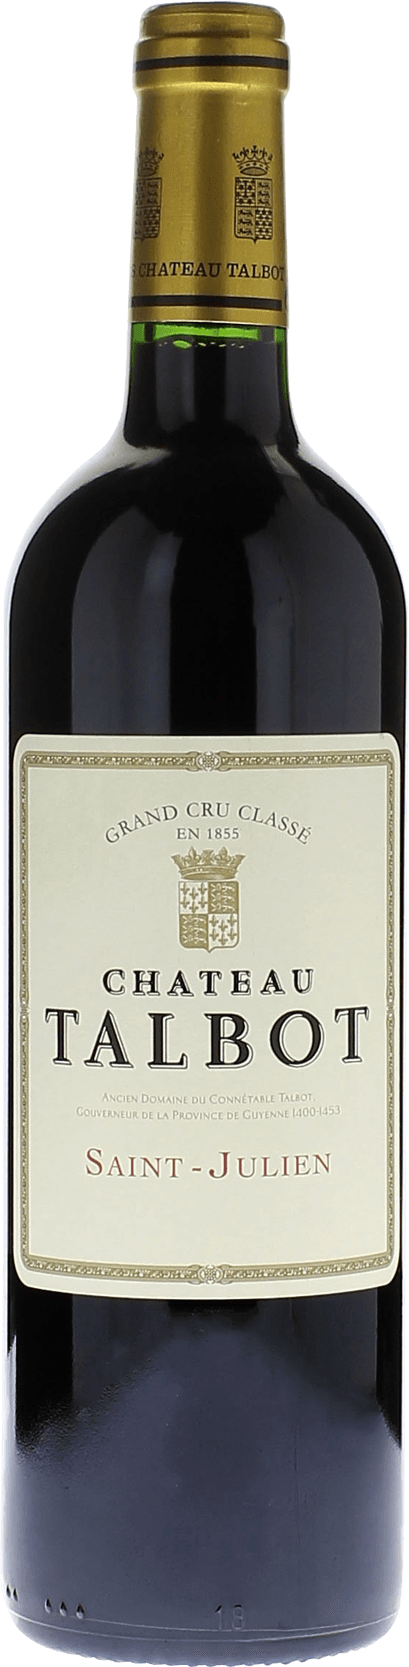 Talbot 1959 4me Grand cru class Saint-Julien, Bordeaux rouge